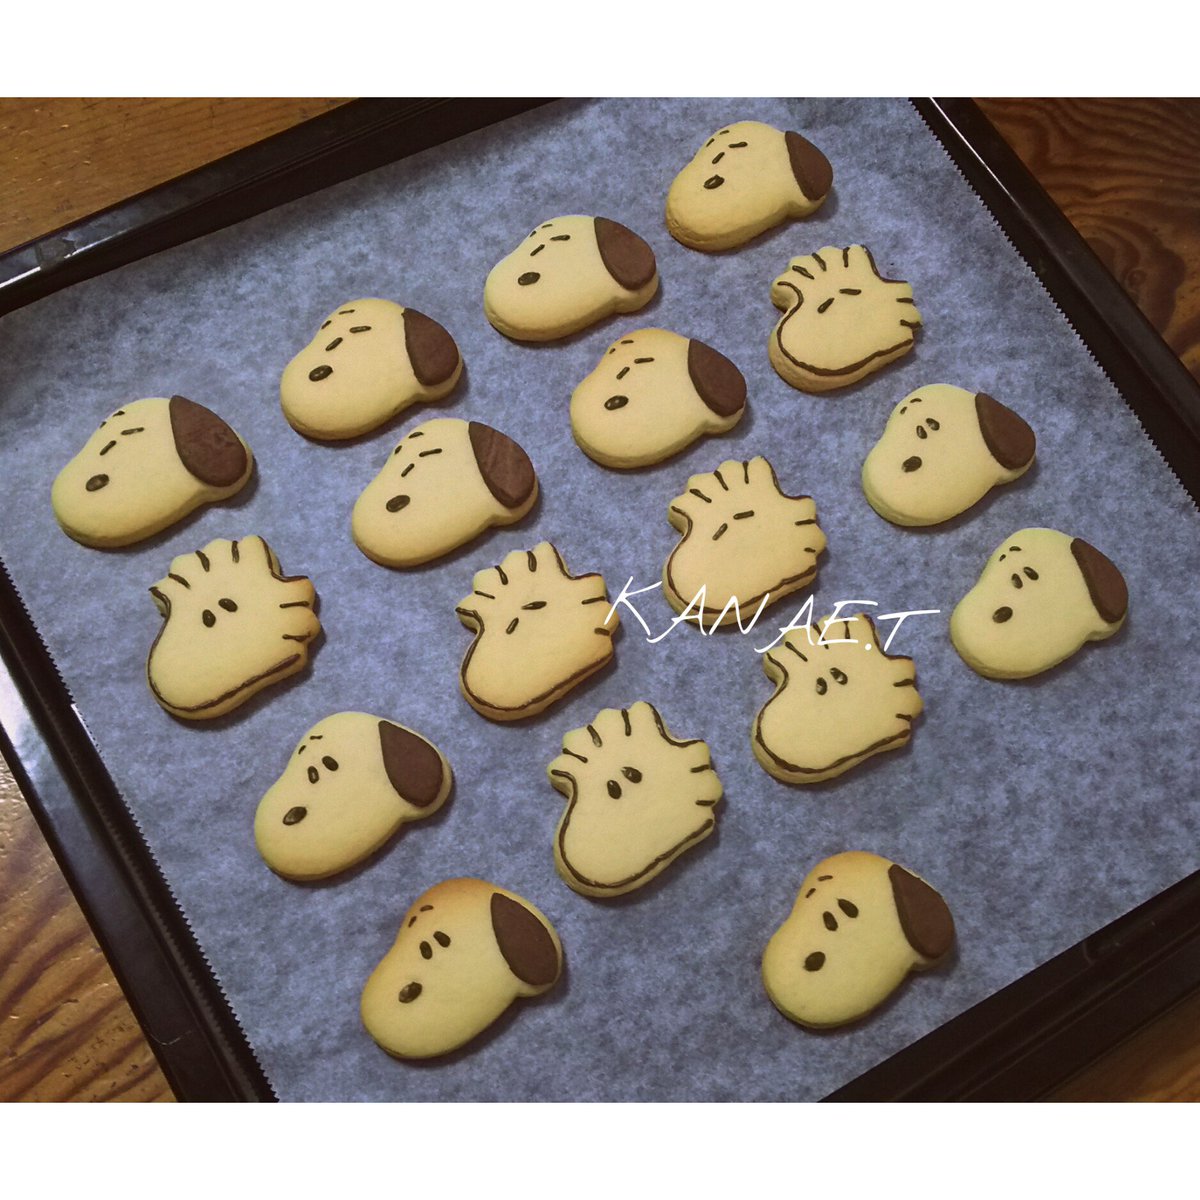 かなーぶらうん V Twitter ハゲタカスヌーピーのクッキー 付属 木 今年のバレンタインクッキー作り 自分宛 完全に自分好みに仕上げた Peanuts Snoopy スヌーピー スヌーピークッキー